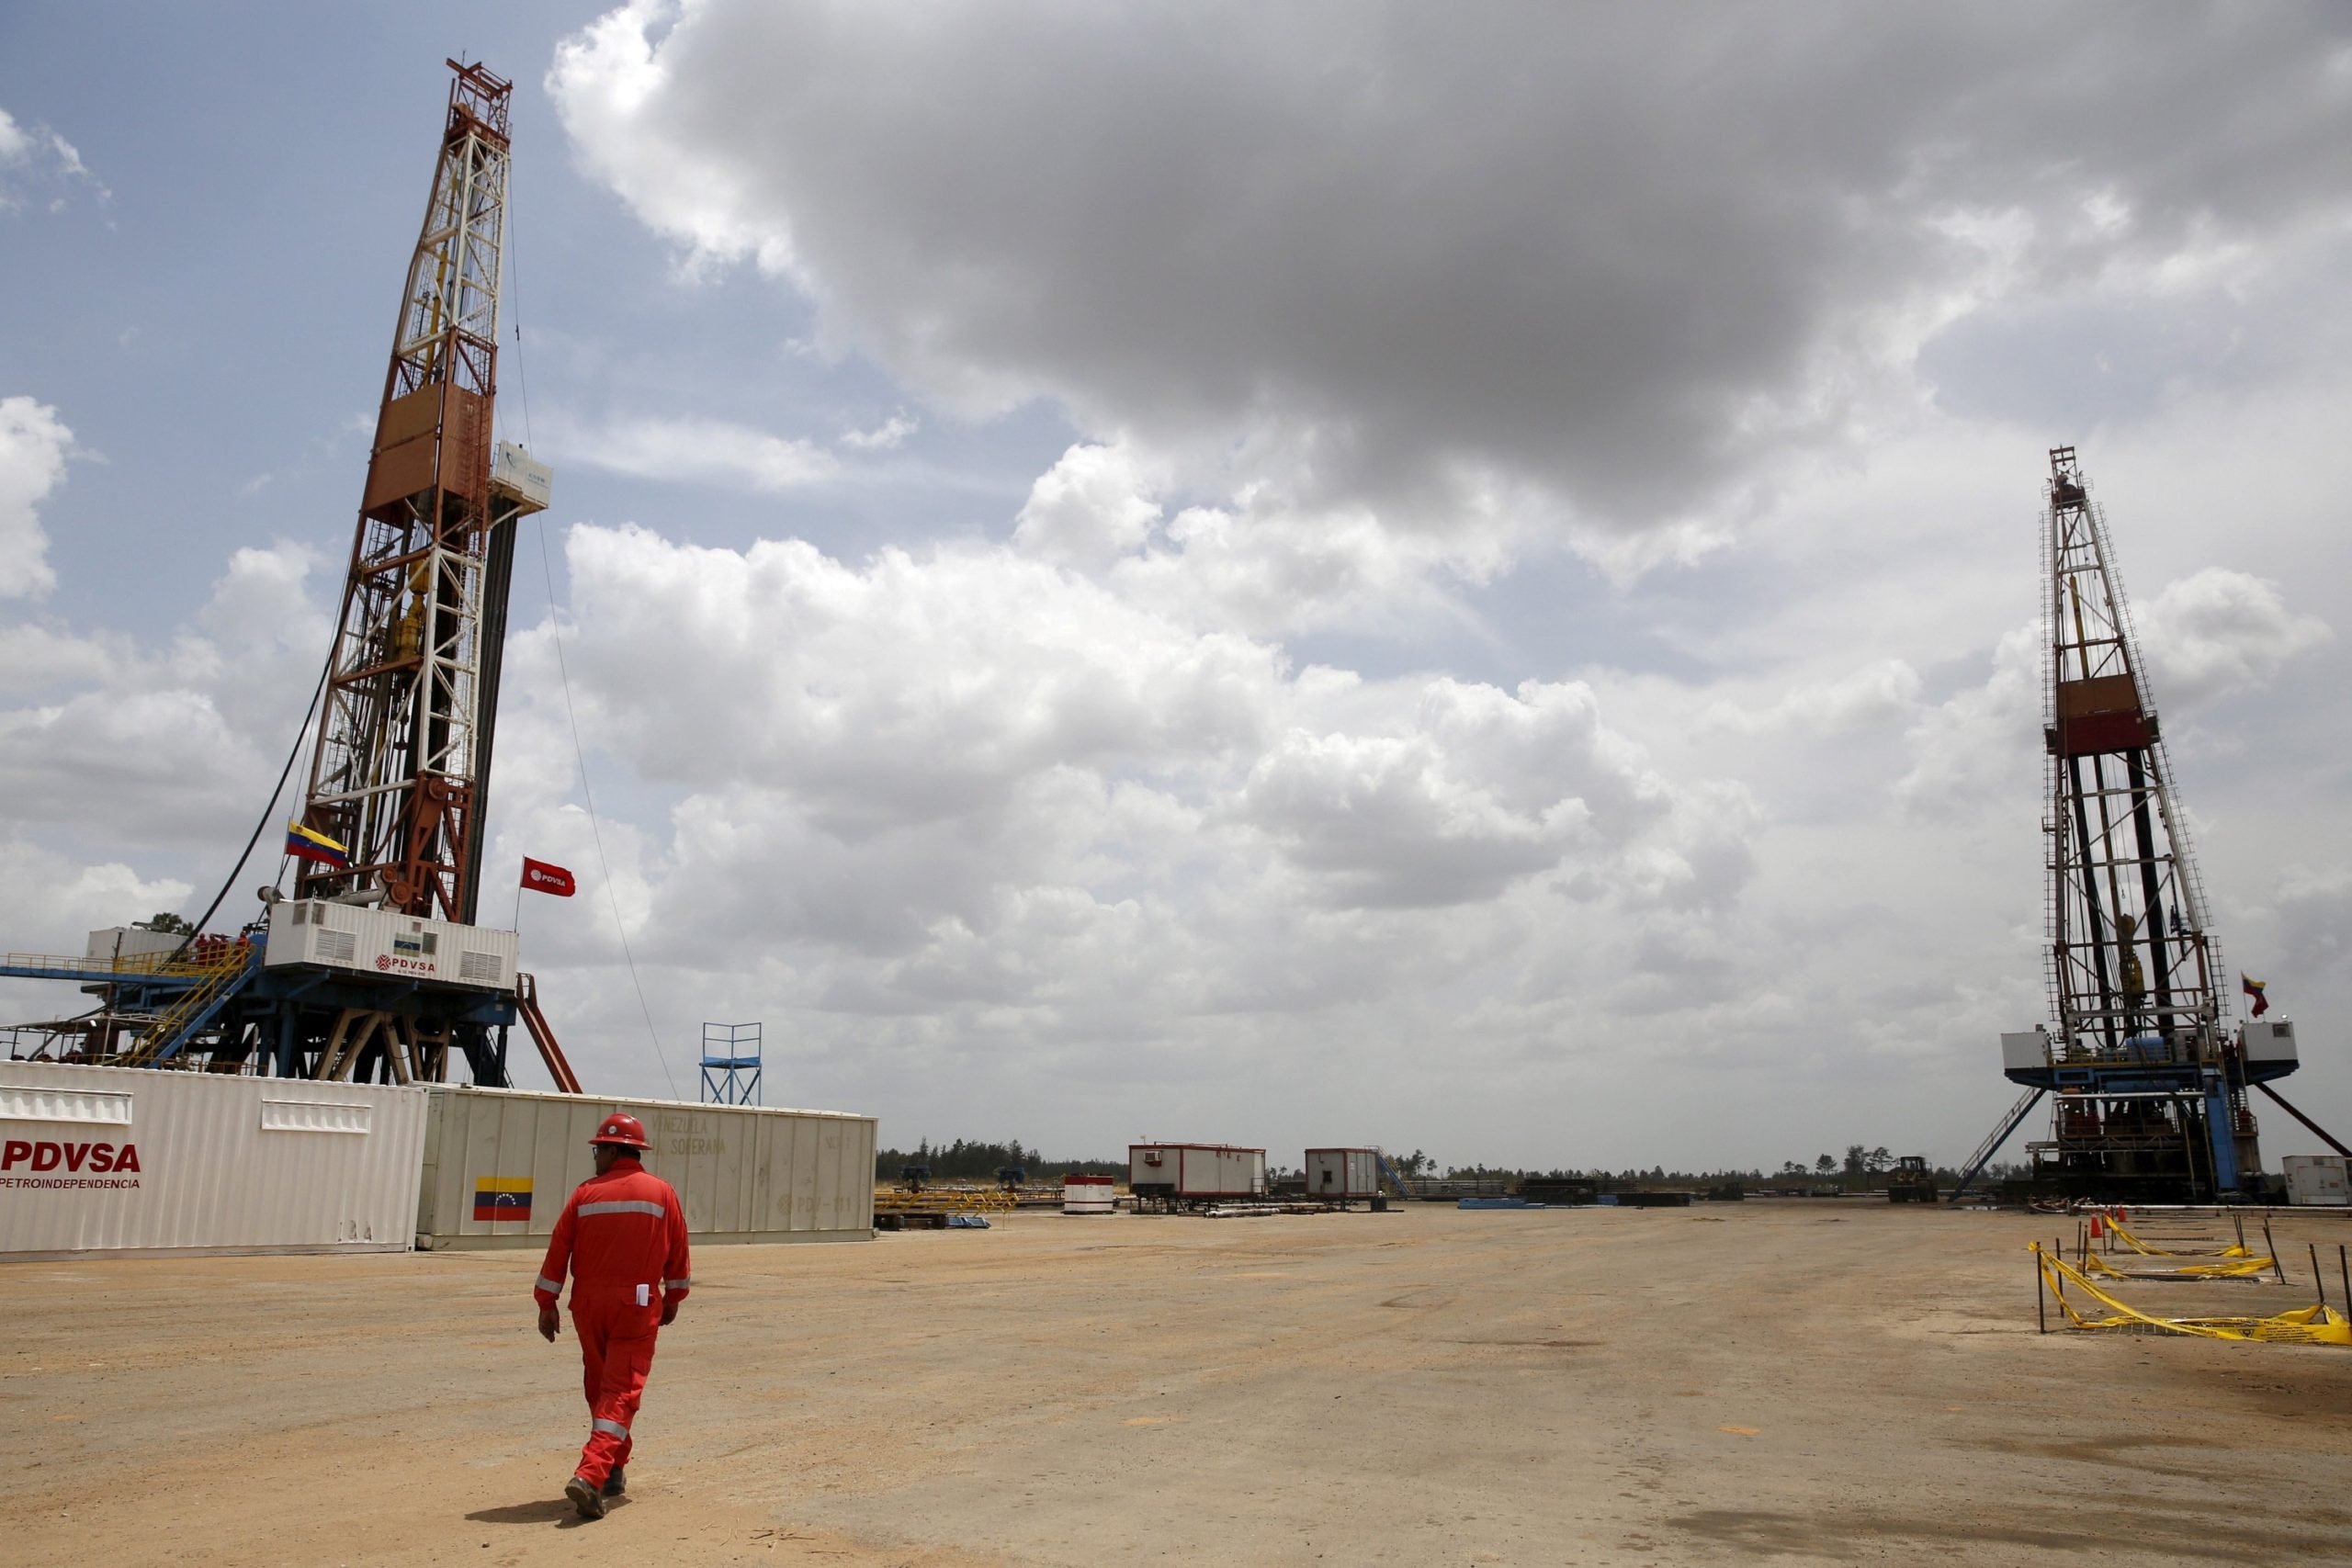 Con un reacomodo interno en PDVSA intentan reanimar producción petrolera en Venezuela